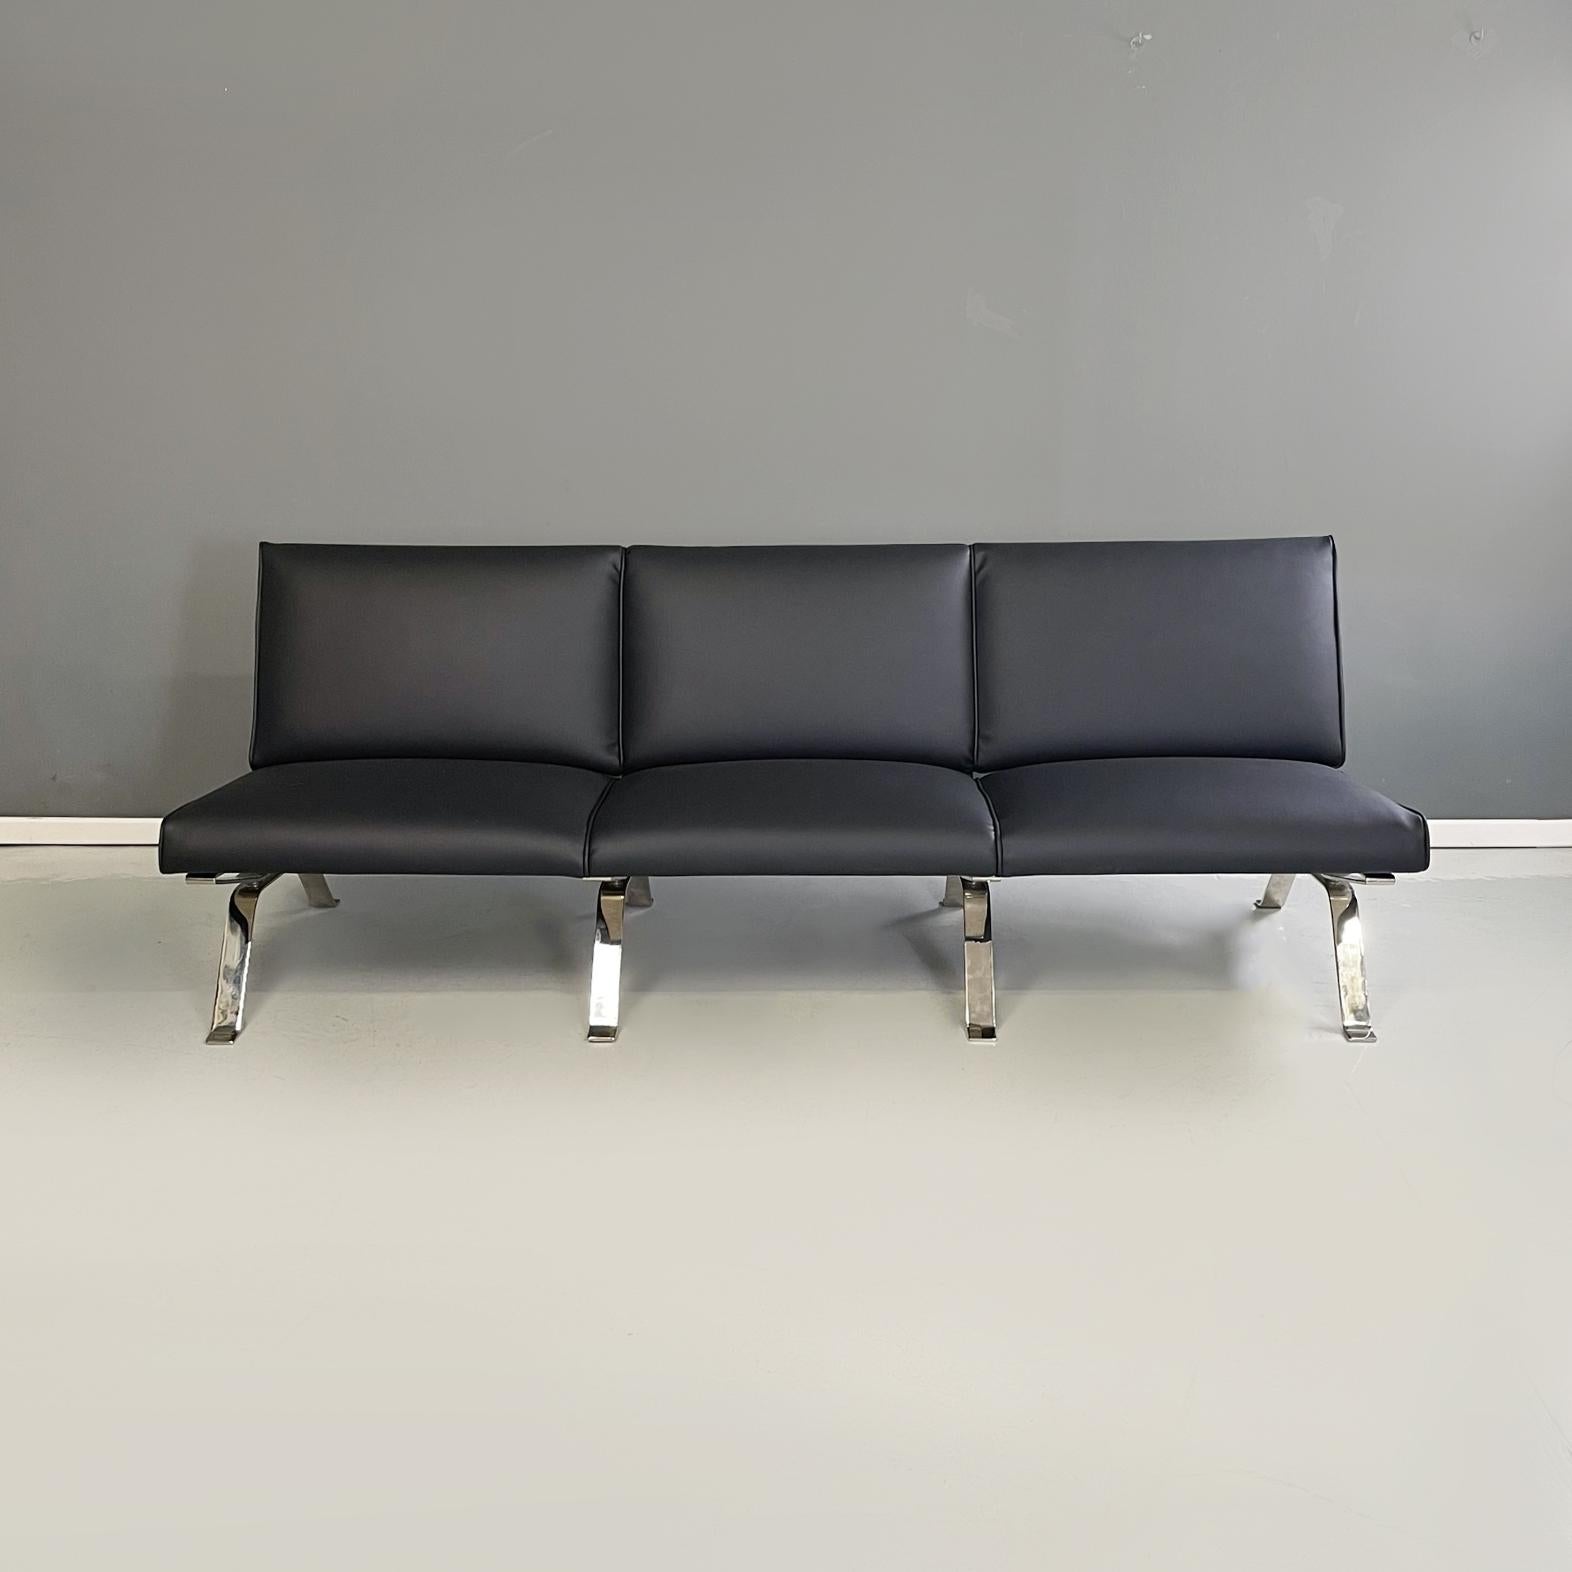 Modernes italienisches Dreisitzer-Sofa aus schwarzem Leder von Gastone Rinaldi für RIMA, 1970er Jahre
Dreisitzer-Sofa mit gepolsterten Sitz- und Rückenlehnen, bezogen mit schwarzem Kunstleder. Die Beine und die Struktur sind aus gebogenem,